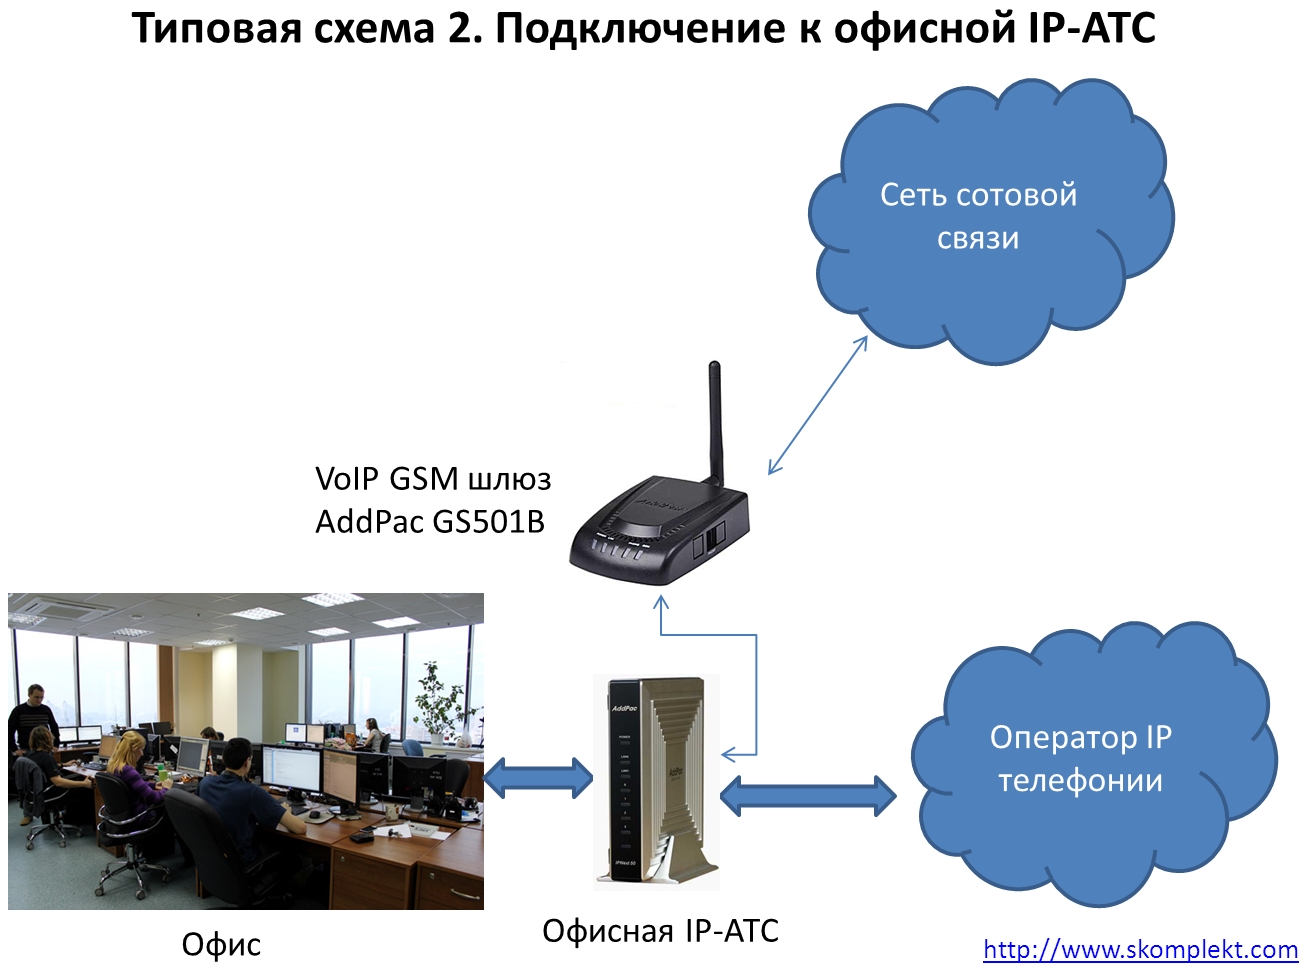 Представляем AddPac GS501B - самый доступный VoIP-GSM шлюз! Типовая схема 2. Подключение к офисной IP-АТС